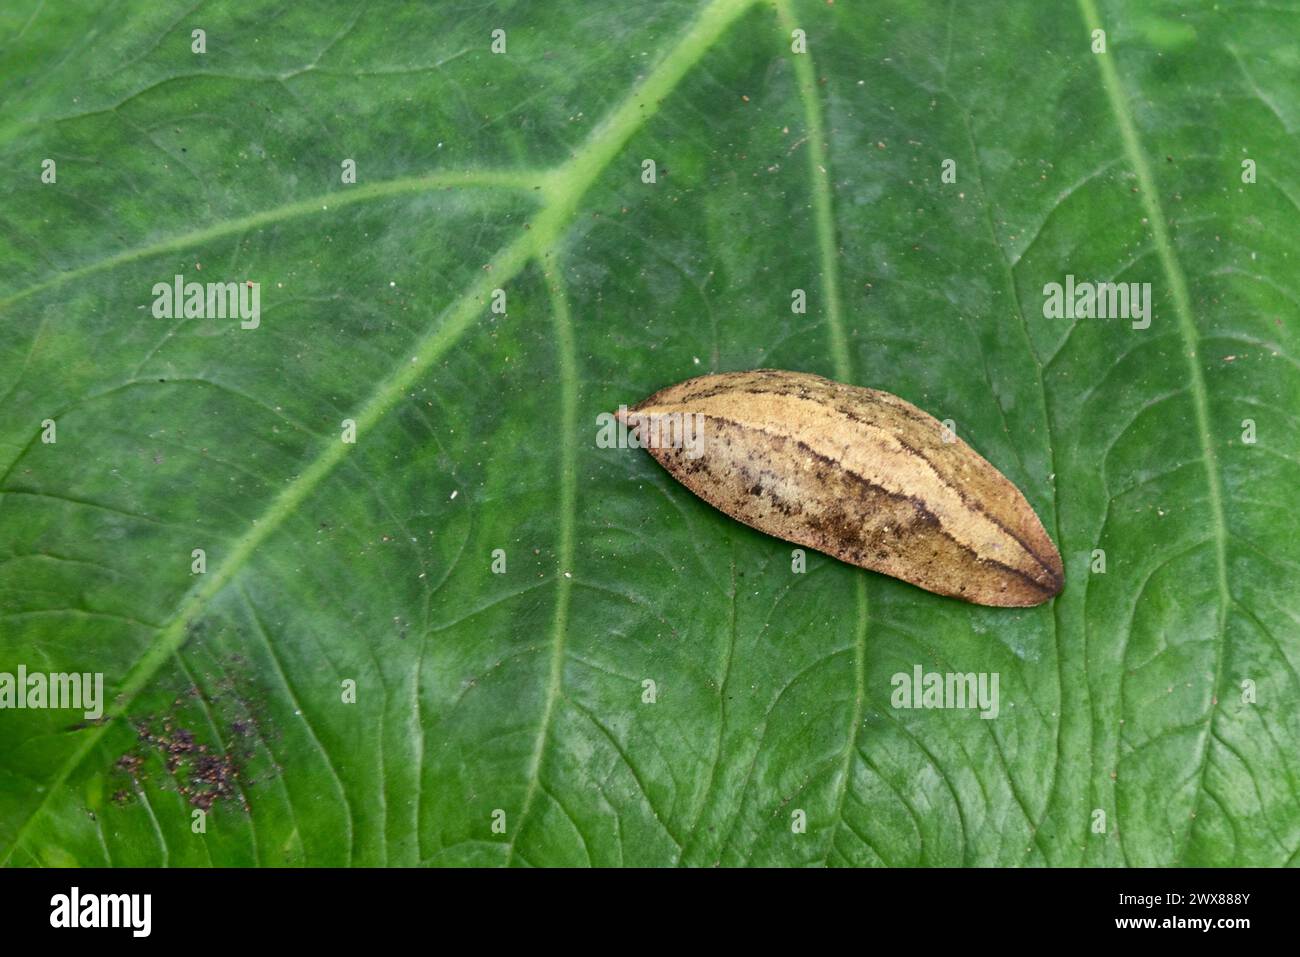 Slug on leaf of Xanthosoma sagittifolium Stock Photo